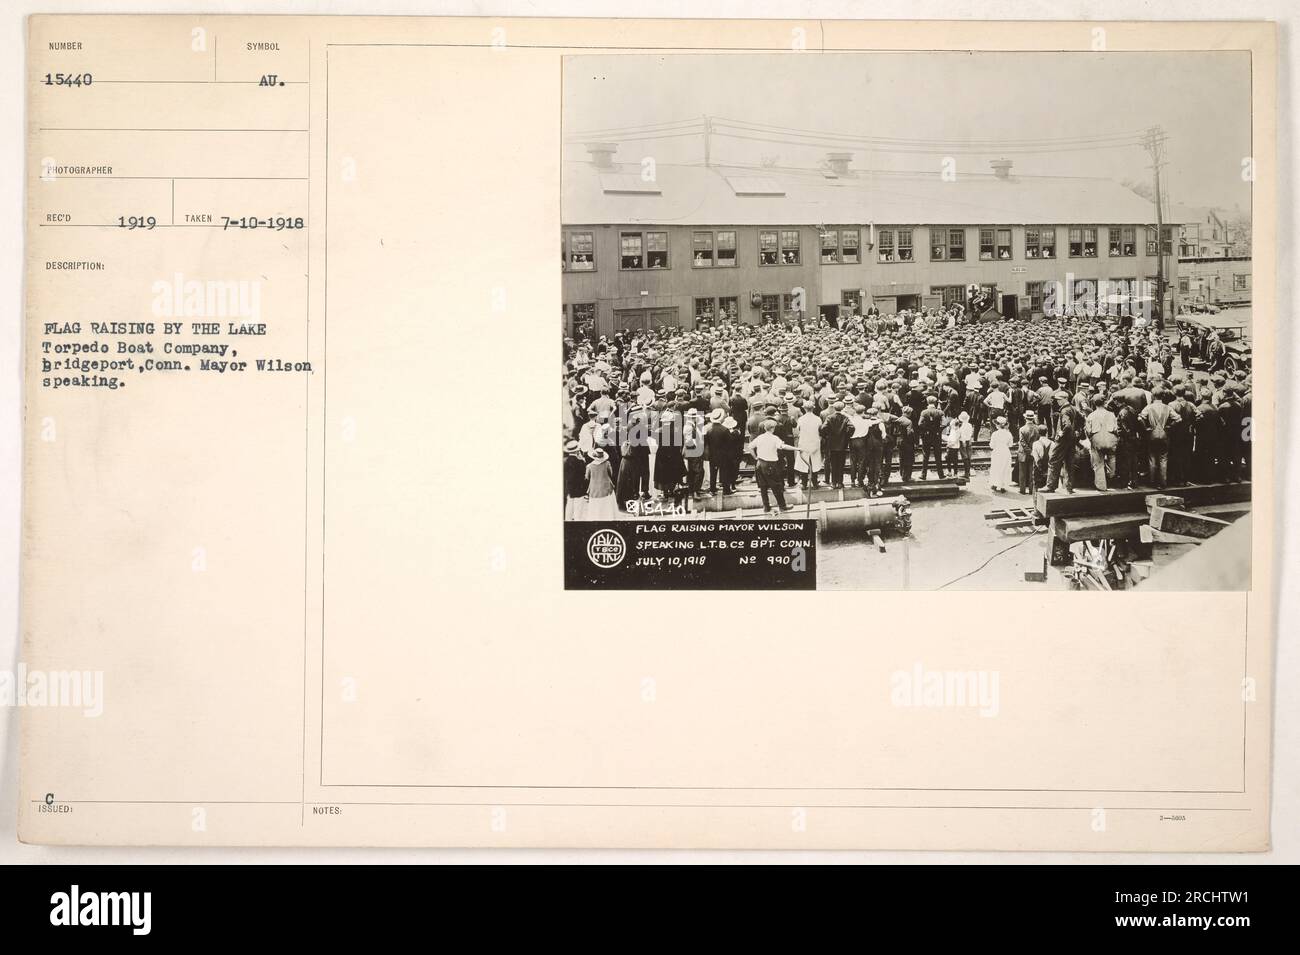 Bürgermeister Wilson spricht während einer Fahnenhebezeremonie bei der Torpedo Boat Company in Bridgeport, Connecticut. Das Foto wurde am 10. Juli 1918 aufgenommen und als Symbol Nummer 15440 ausgegeben. Ein weiteres ähnliches Foto (15441) zeigt Bürgermeister Wilson erneut. Das Foto wurde von RECO aufgenommen und im August 1919 herausgegeben. Stockfoto